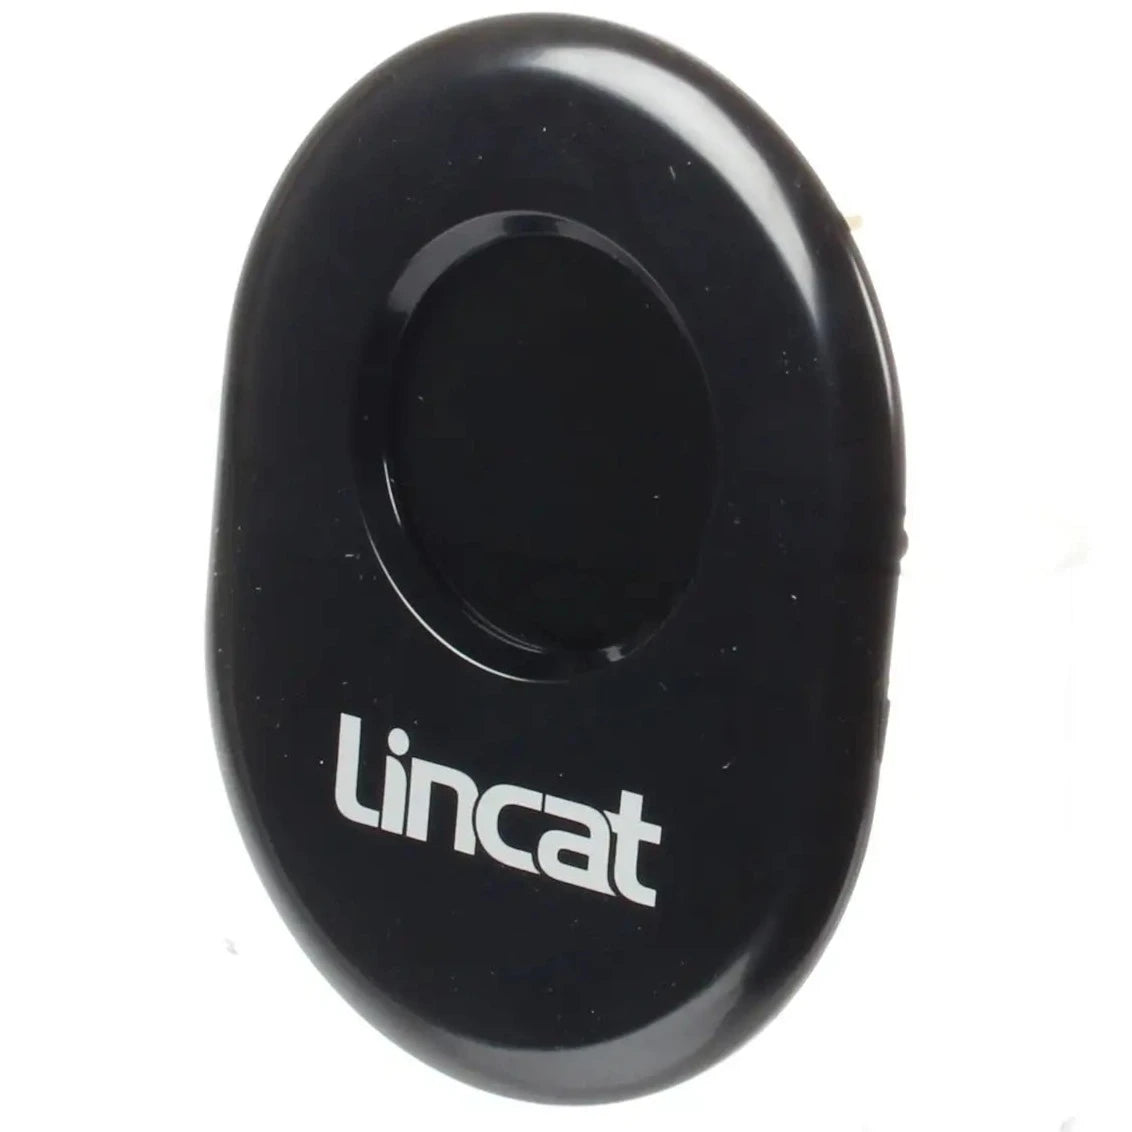 Lincat PR116/S / PR106 Display Board c/w Fascia A001 & A002